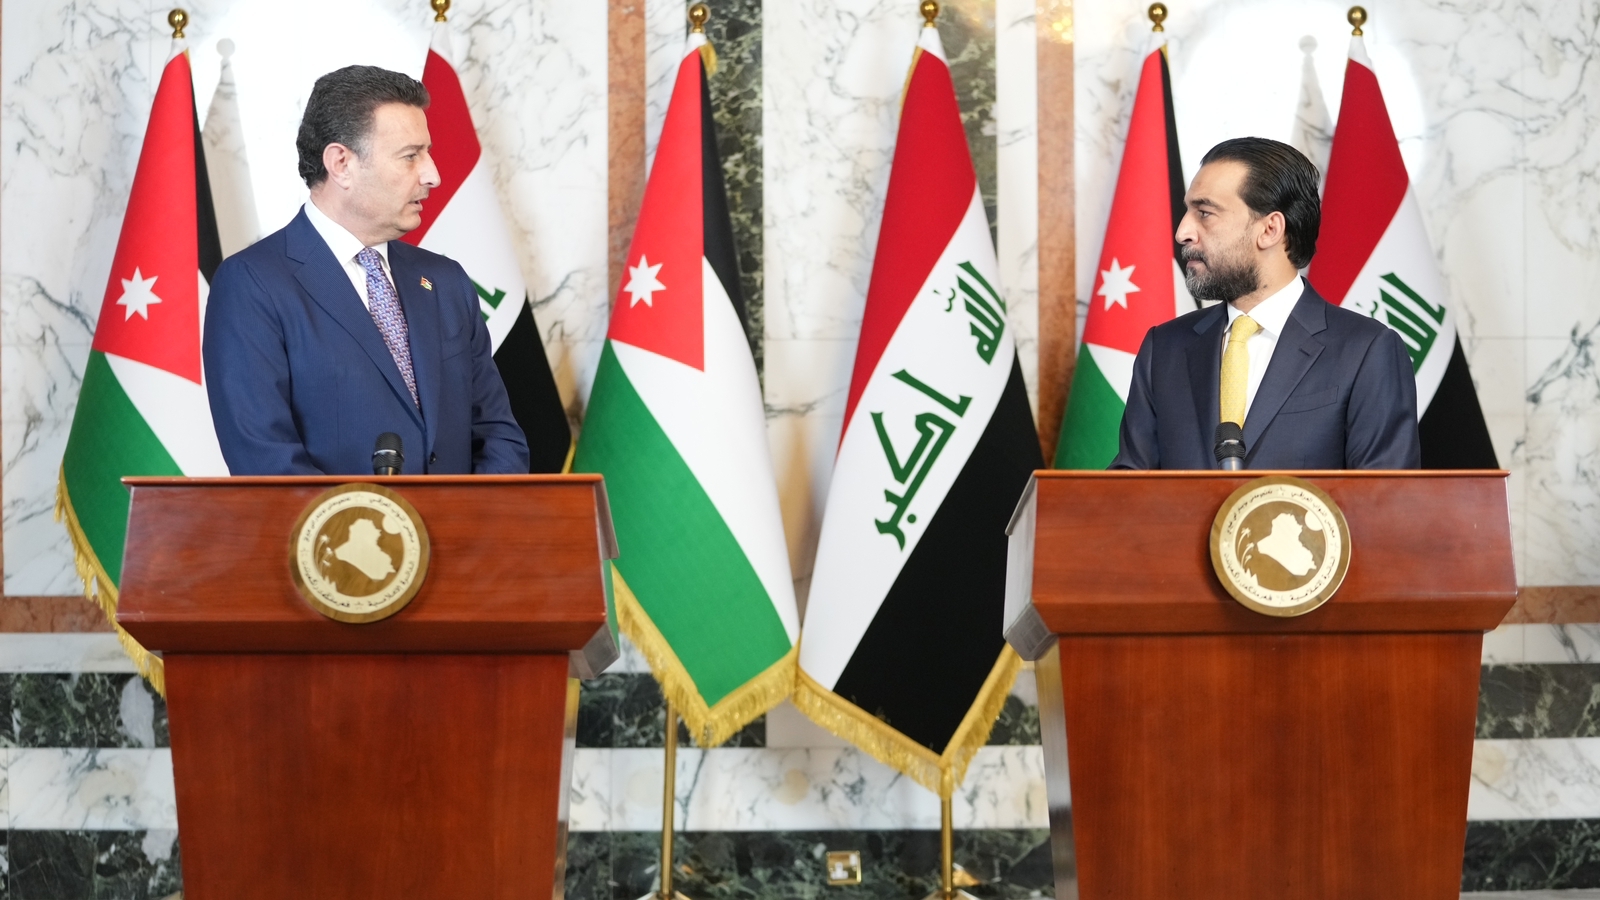 العراق يتفق مع الاردن على تفعيل الاتفاق الثلاثي وموضوع الربط الكهربائي وخط البصرة - العقبة